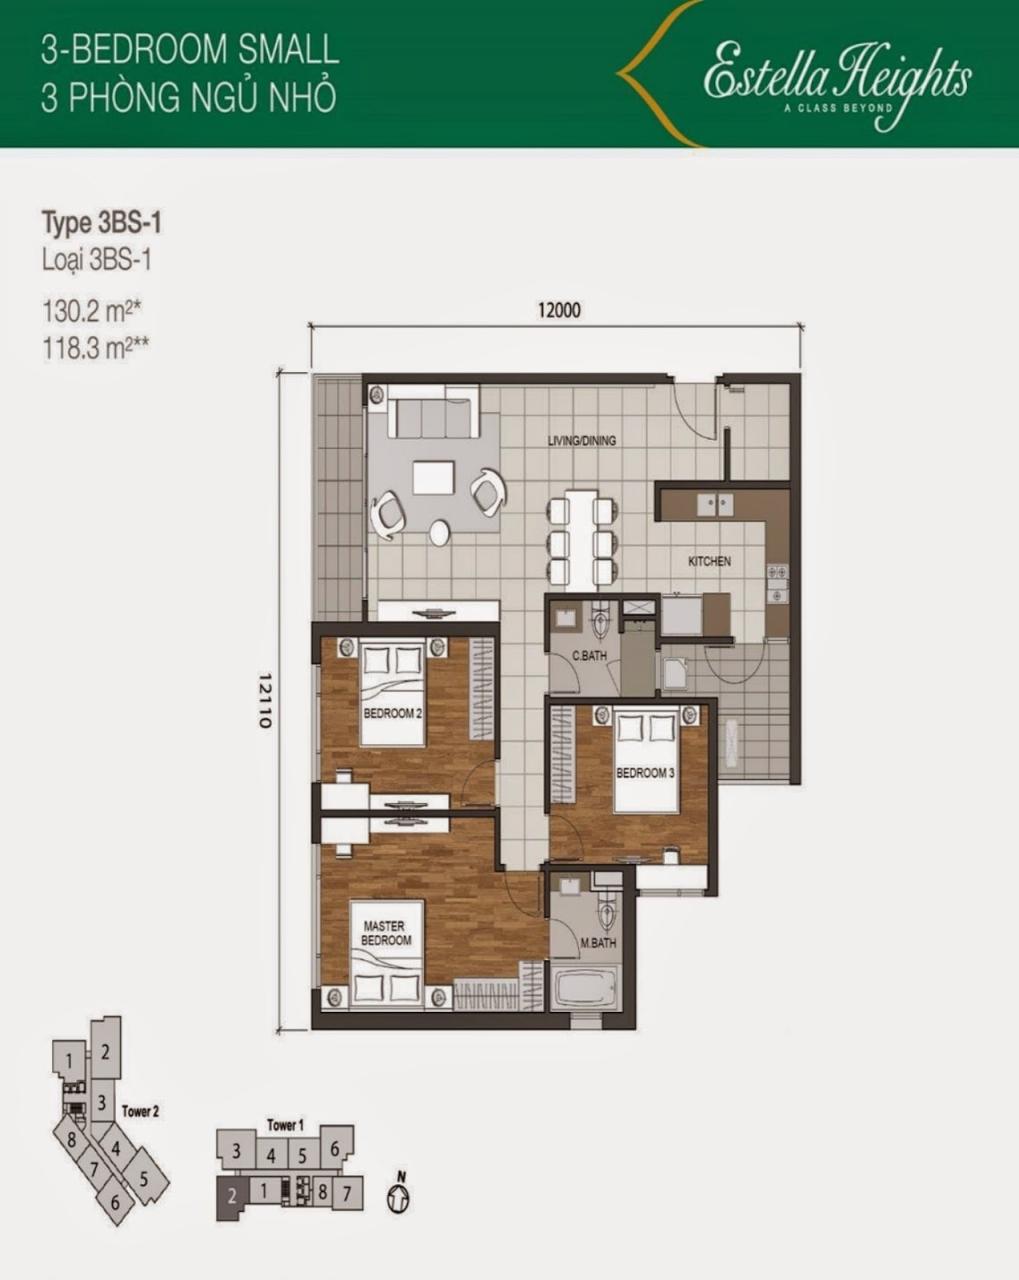 Căn Hộ Estella Heights Gồm 3 Phòng Ngủ Nội Thất Đẹp Tại Tháp T3 Tầng Cao  Cần Bán | Công Ty Bđs Proviewland